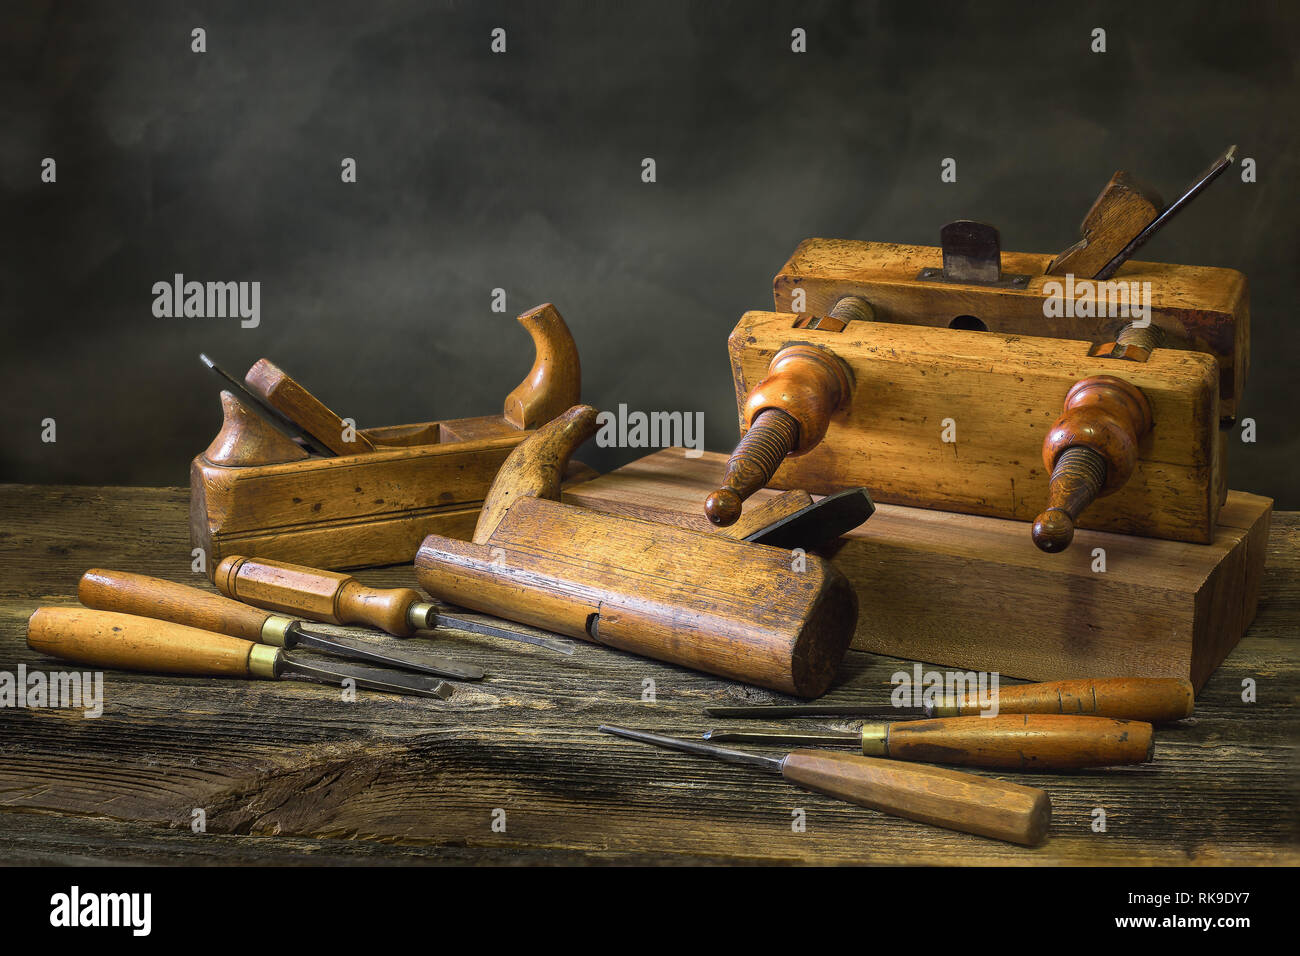 La vie toujours avec des outils de menuiserie, banc d'avions de la menuiserie, la sculpture sur bois ciseau Banque D'Images